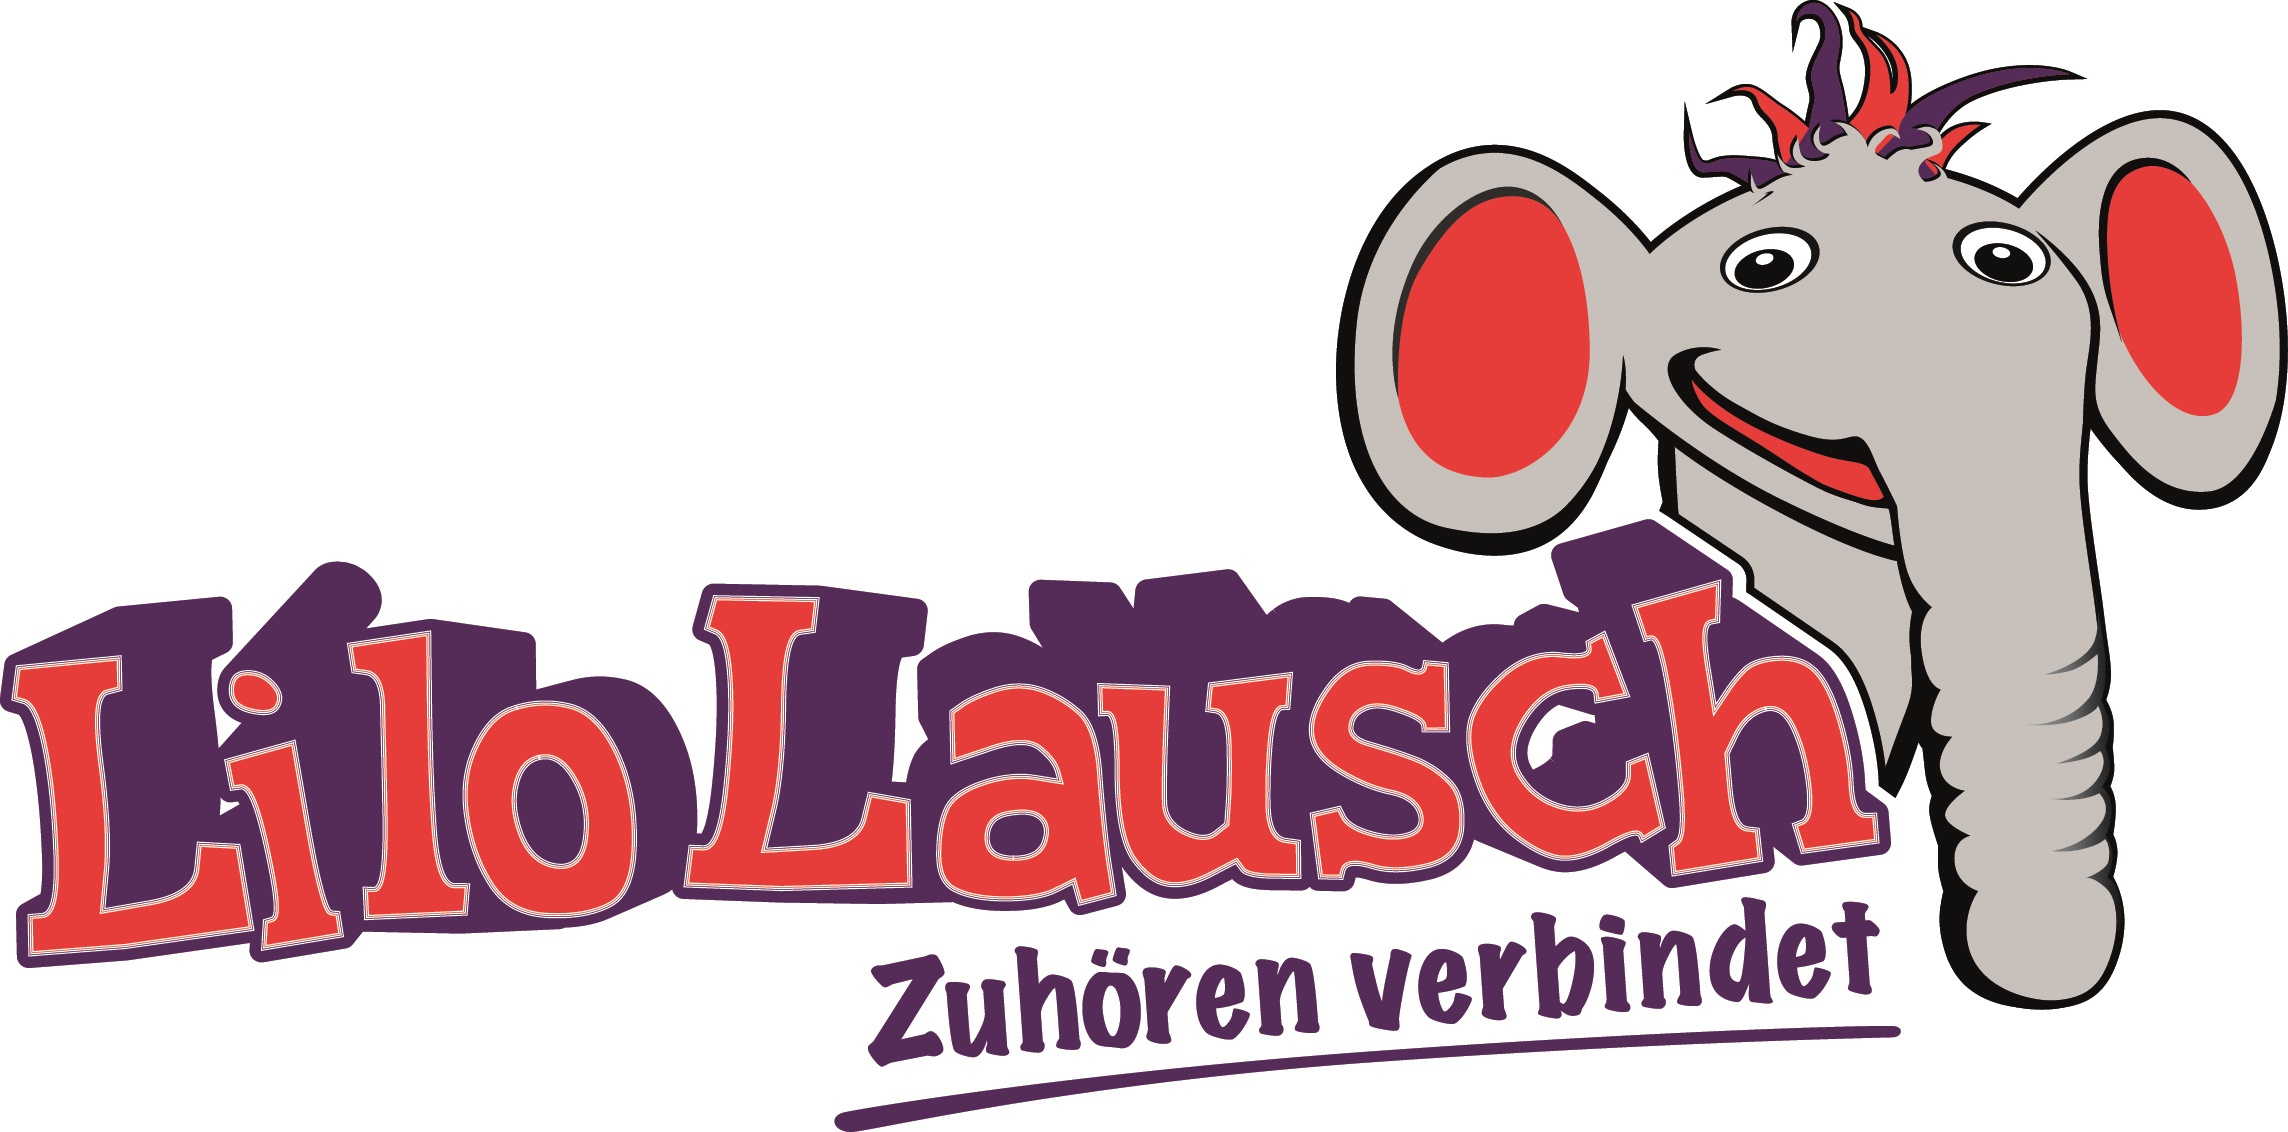 Lilo_Logo_Neu_Zuhoeren_verbindet_druck